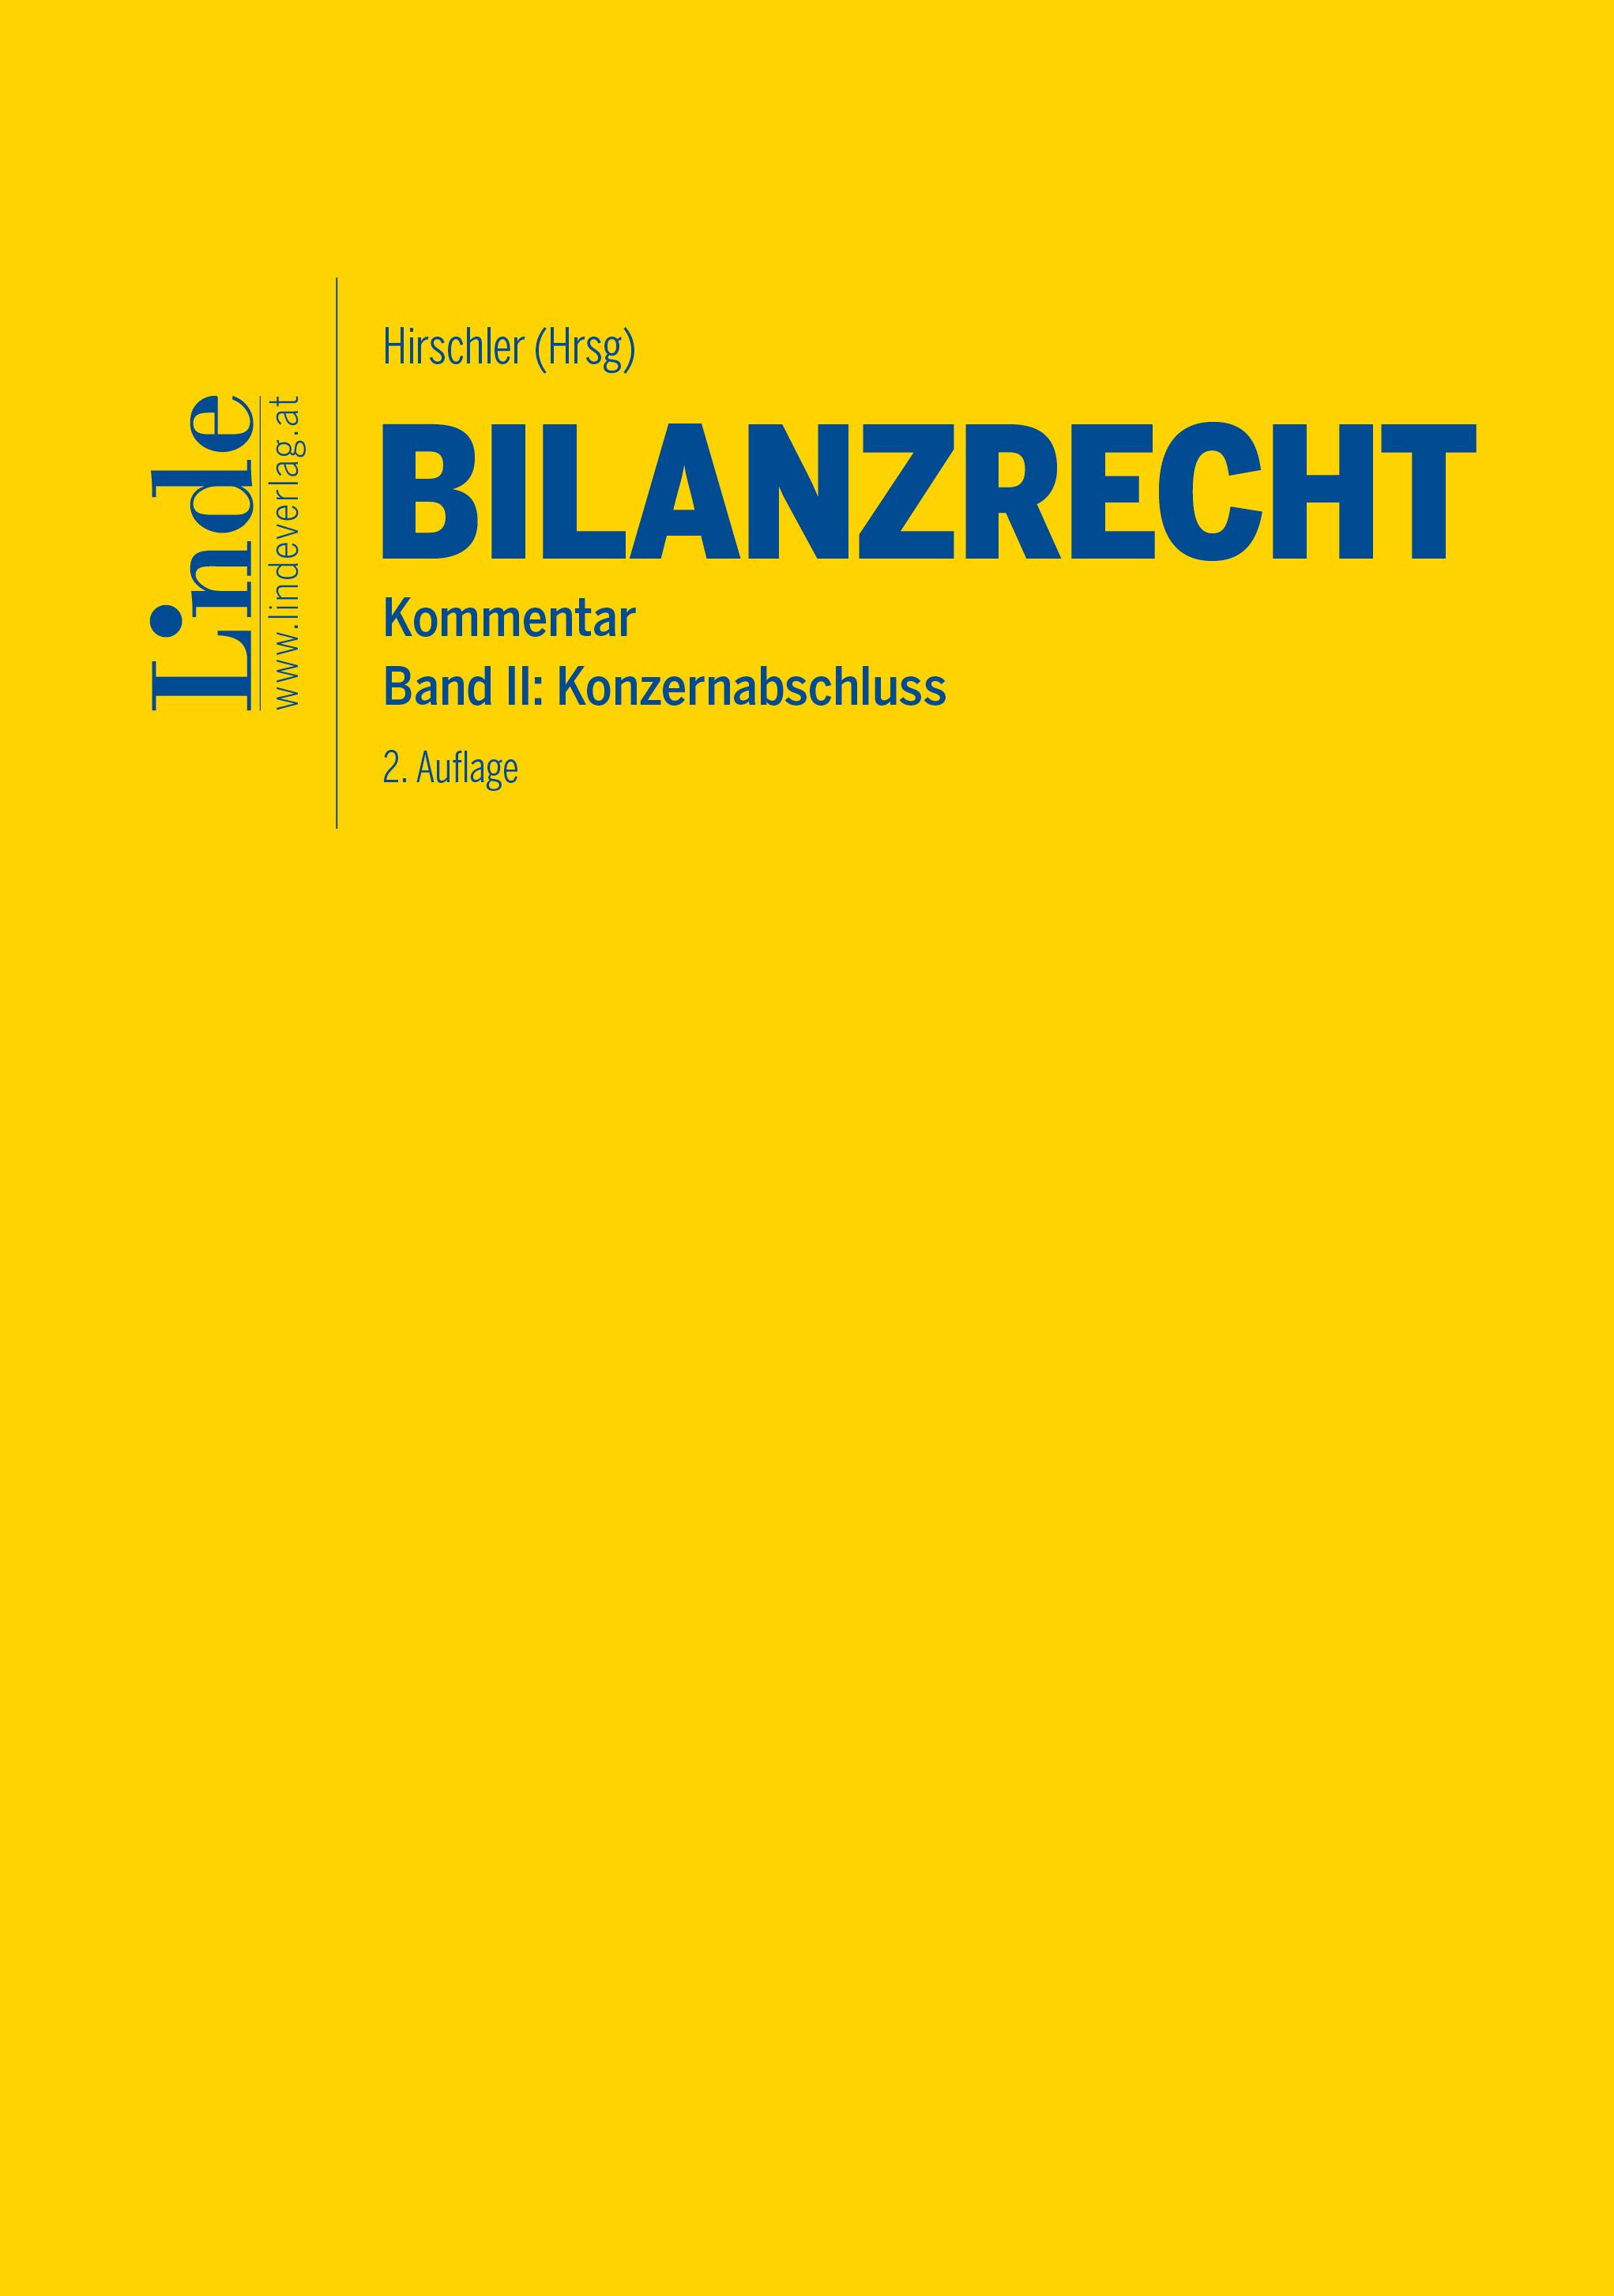 Hirschler (Hrsg.)
Bilanzrecht
Kommentar | Band II: Konzernabschluss